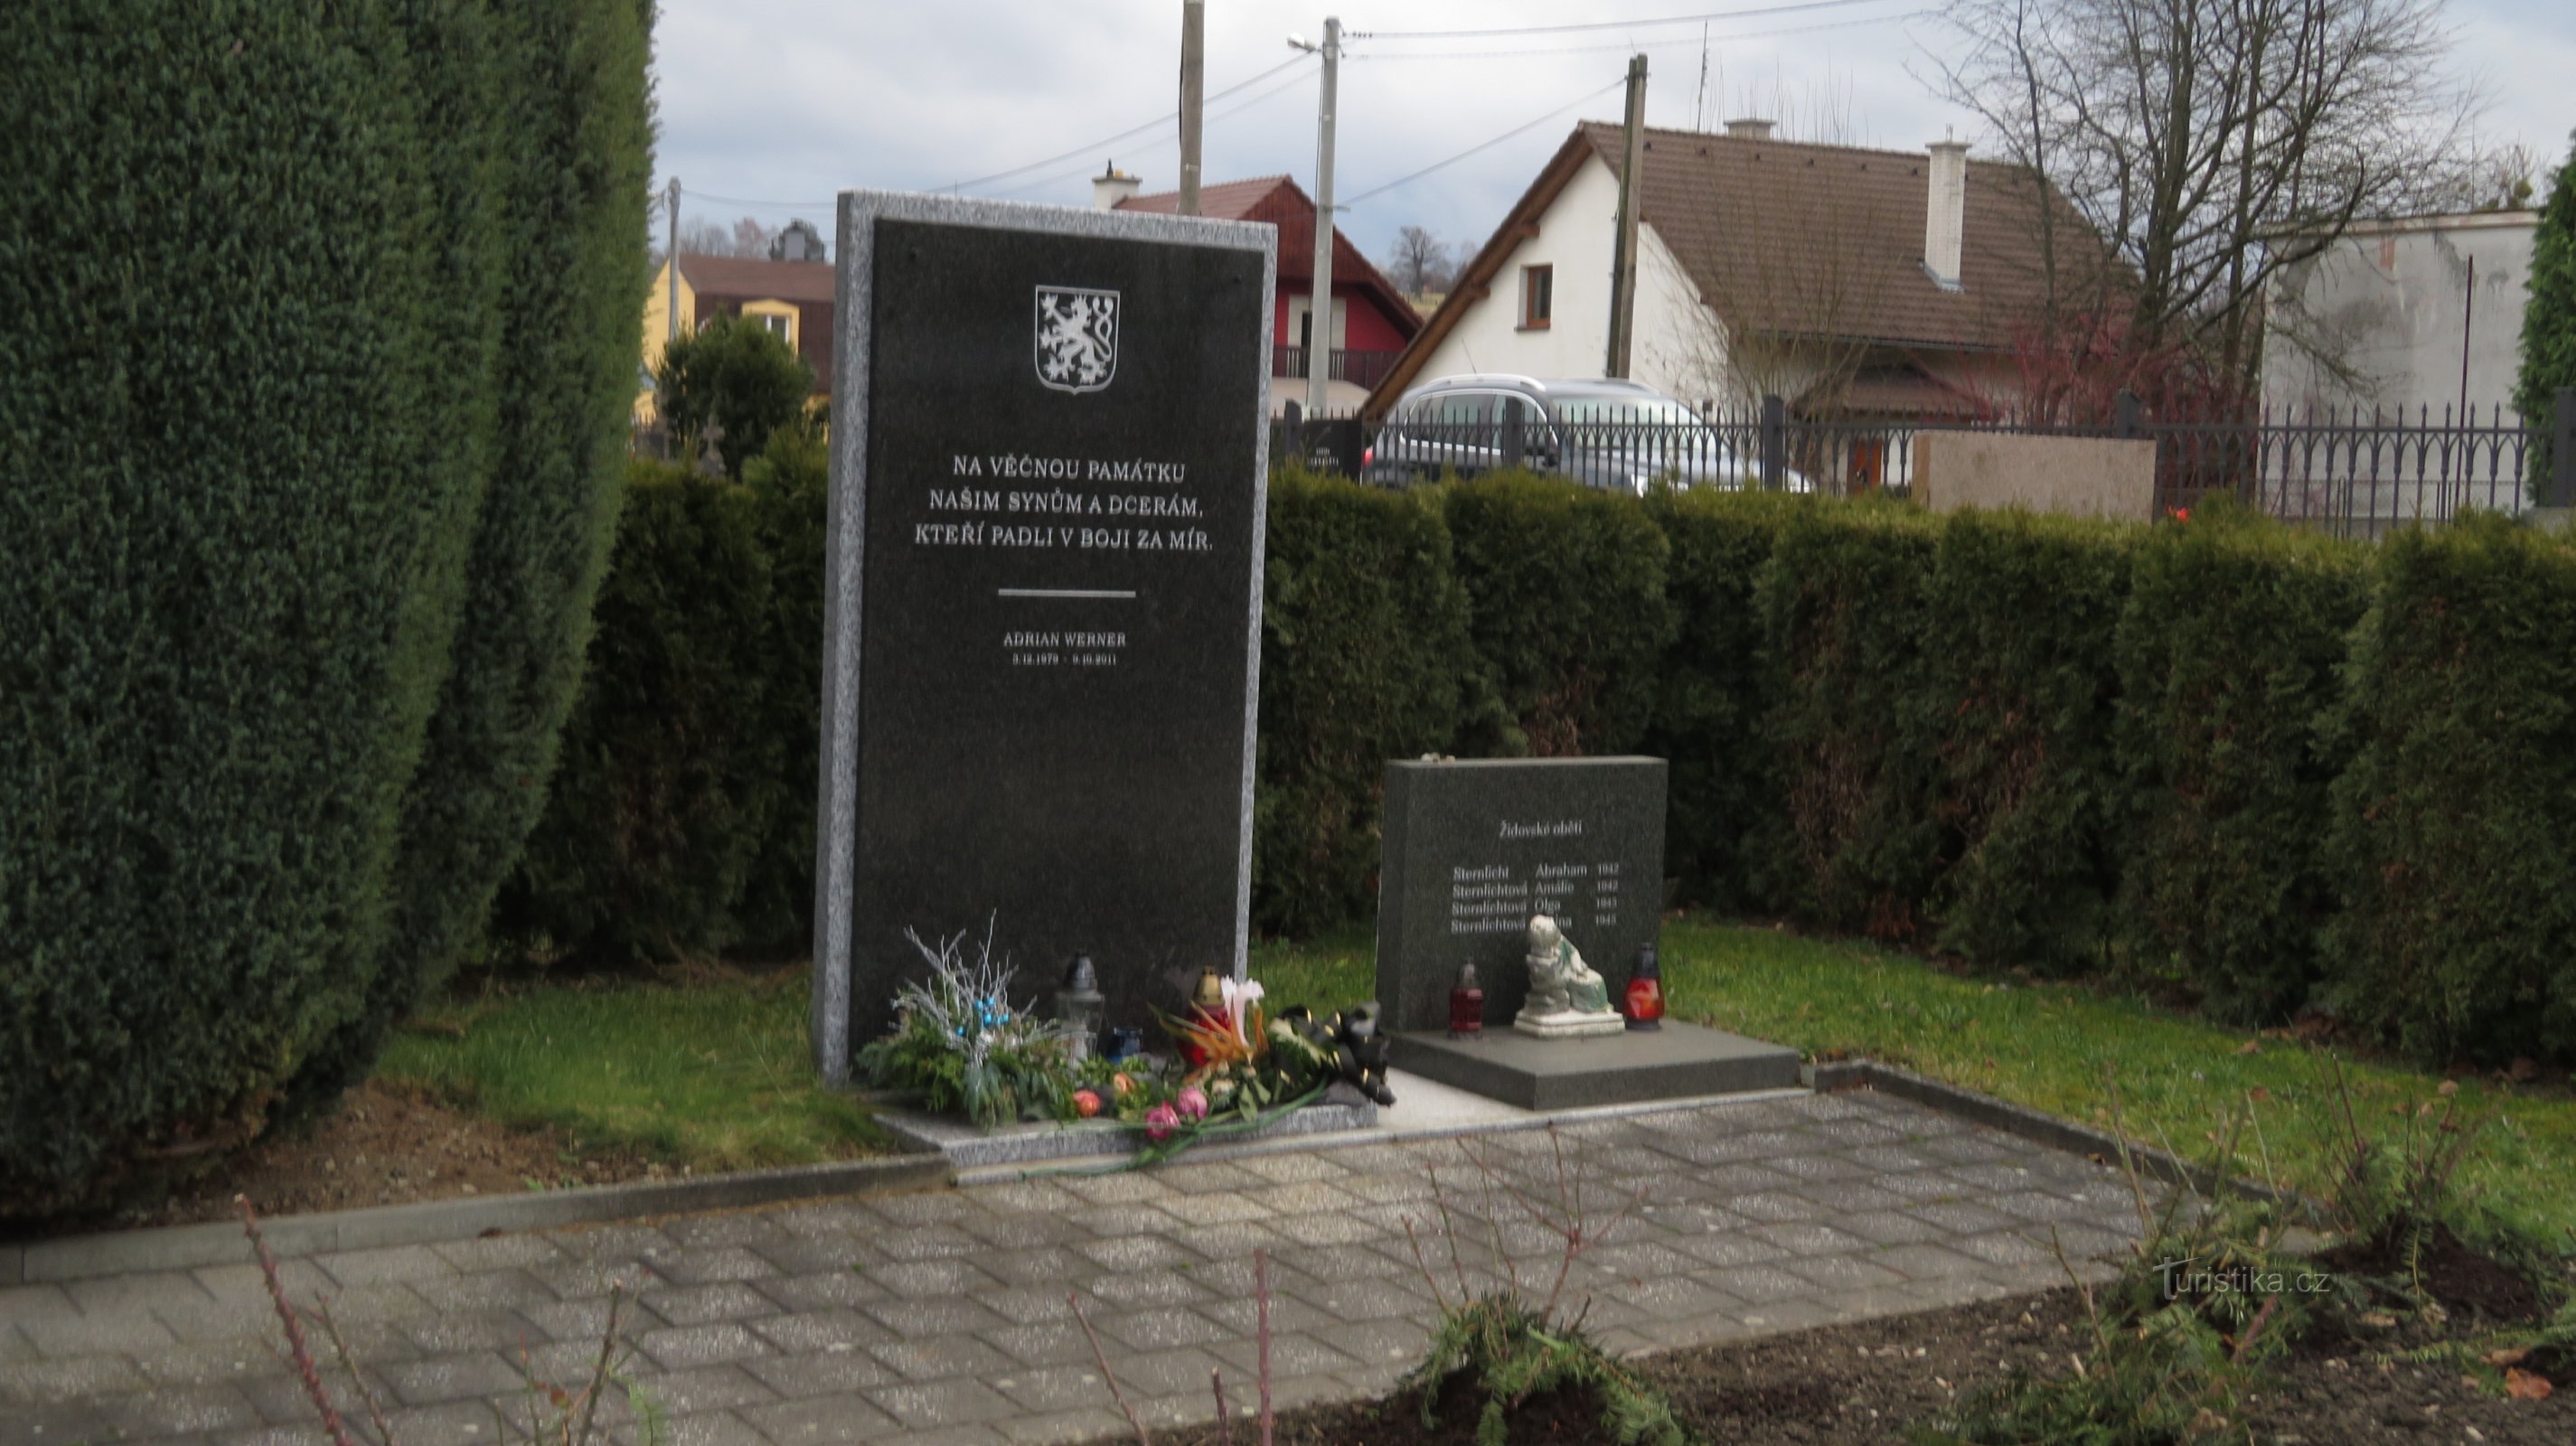 Albrechtice nær Český Těšín - hver epoke har sine helte